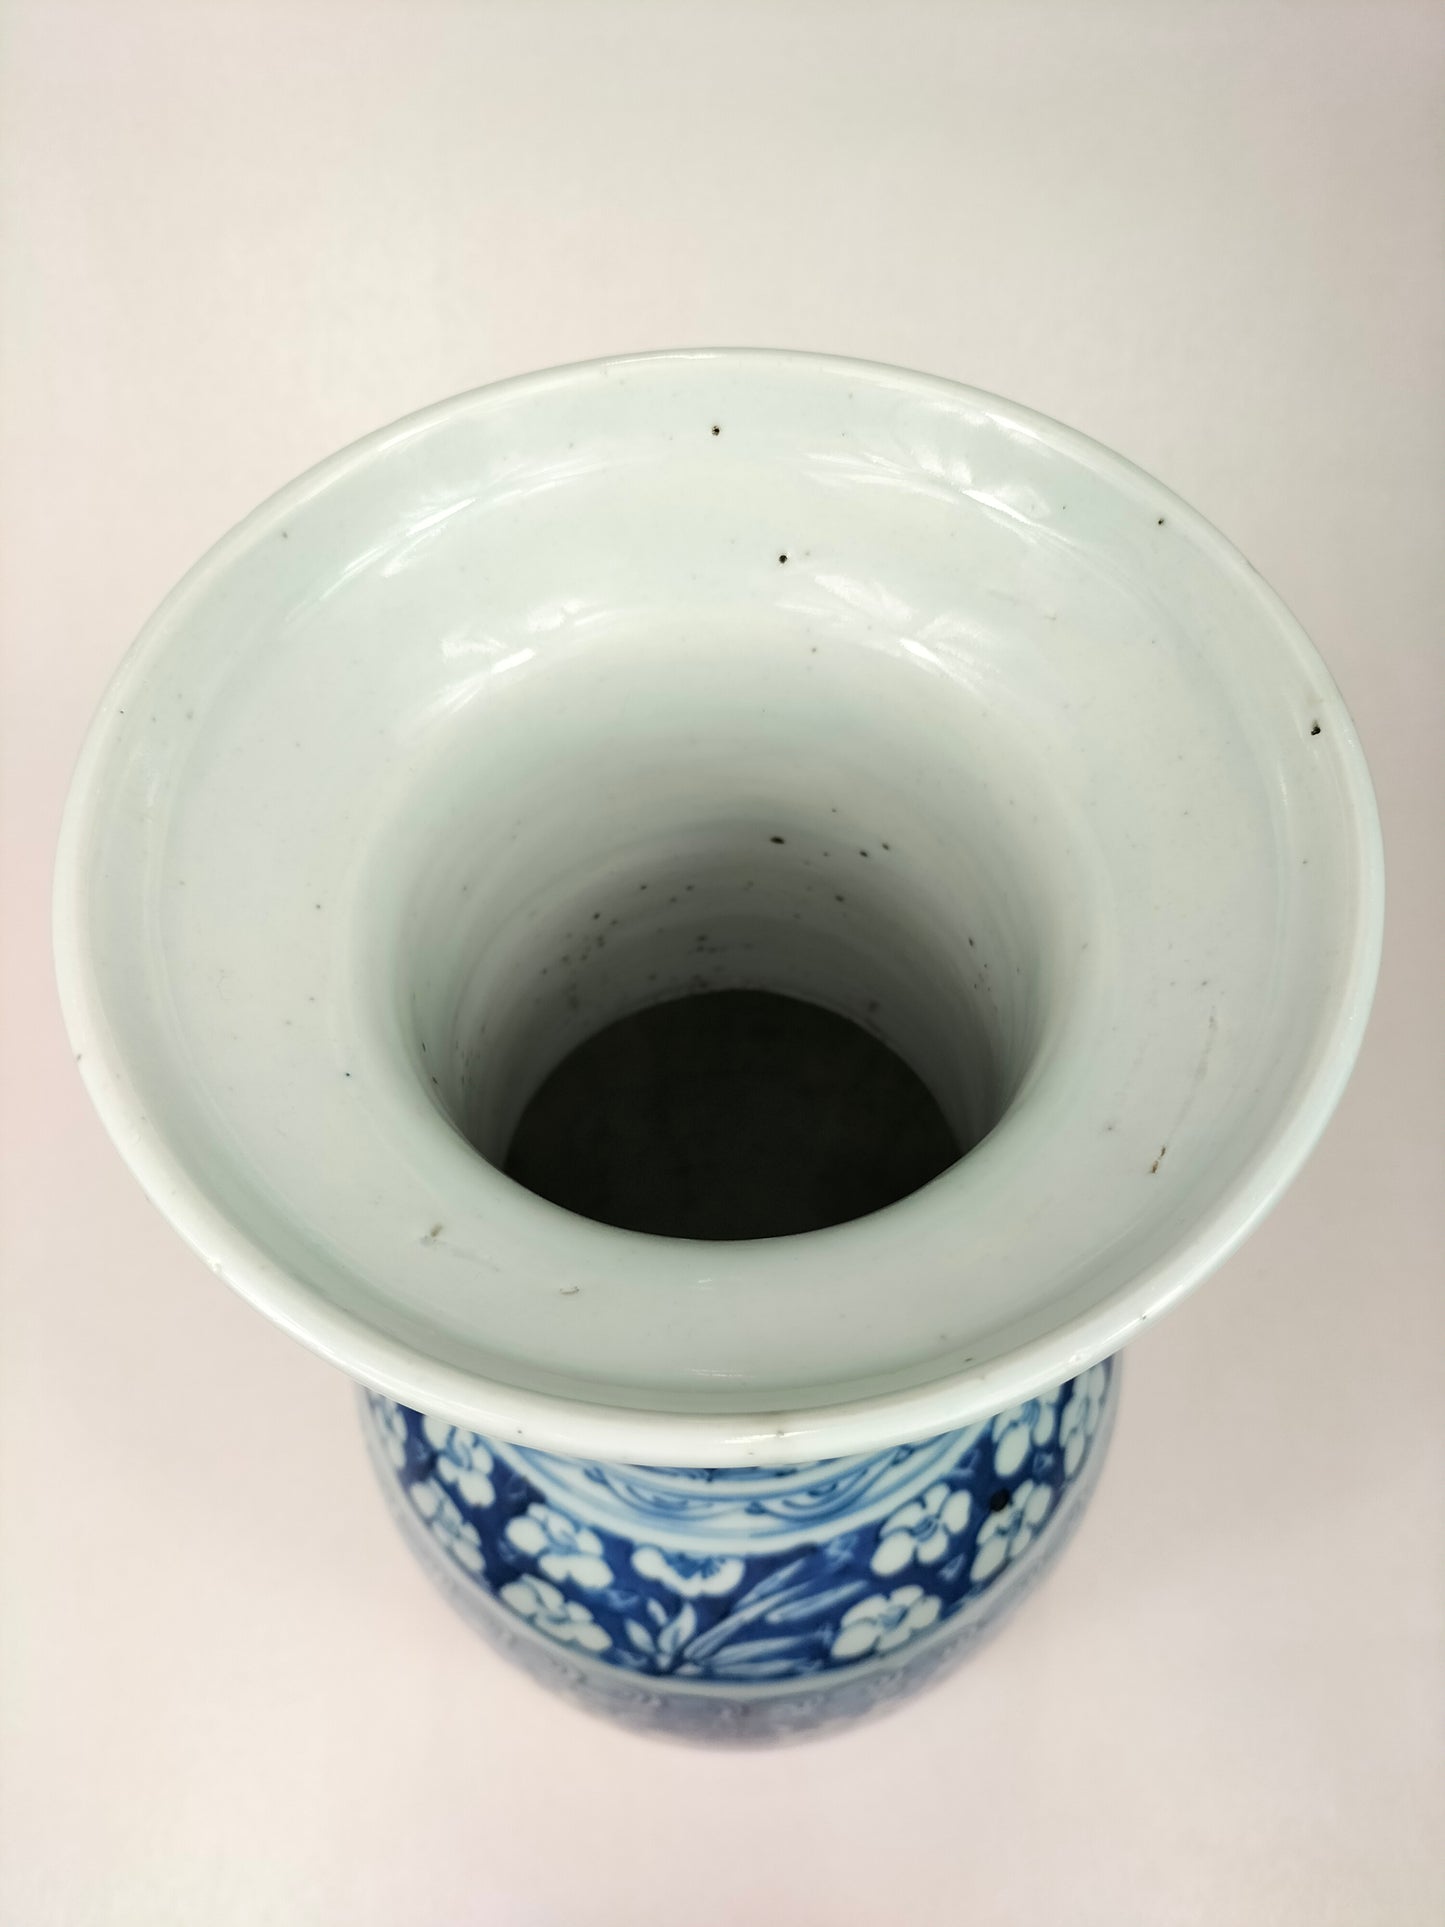 Vase double bonheur chinois antique // Bleu et blanc - Dynastie Qing - 19ème siècle